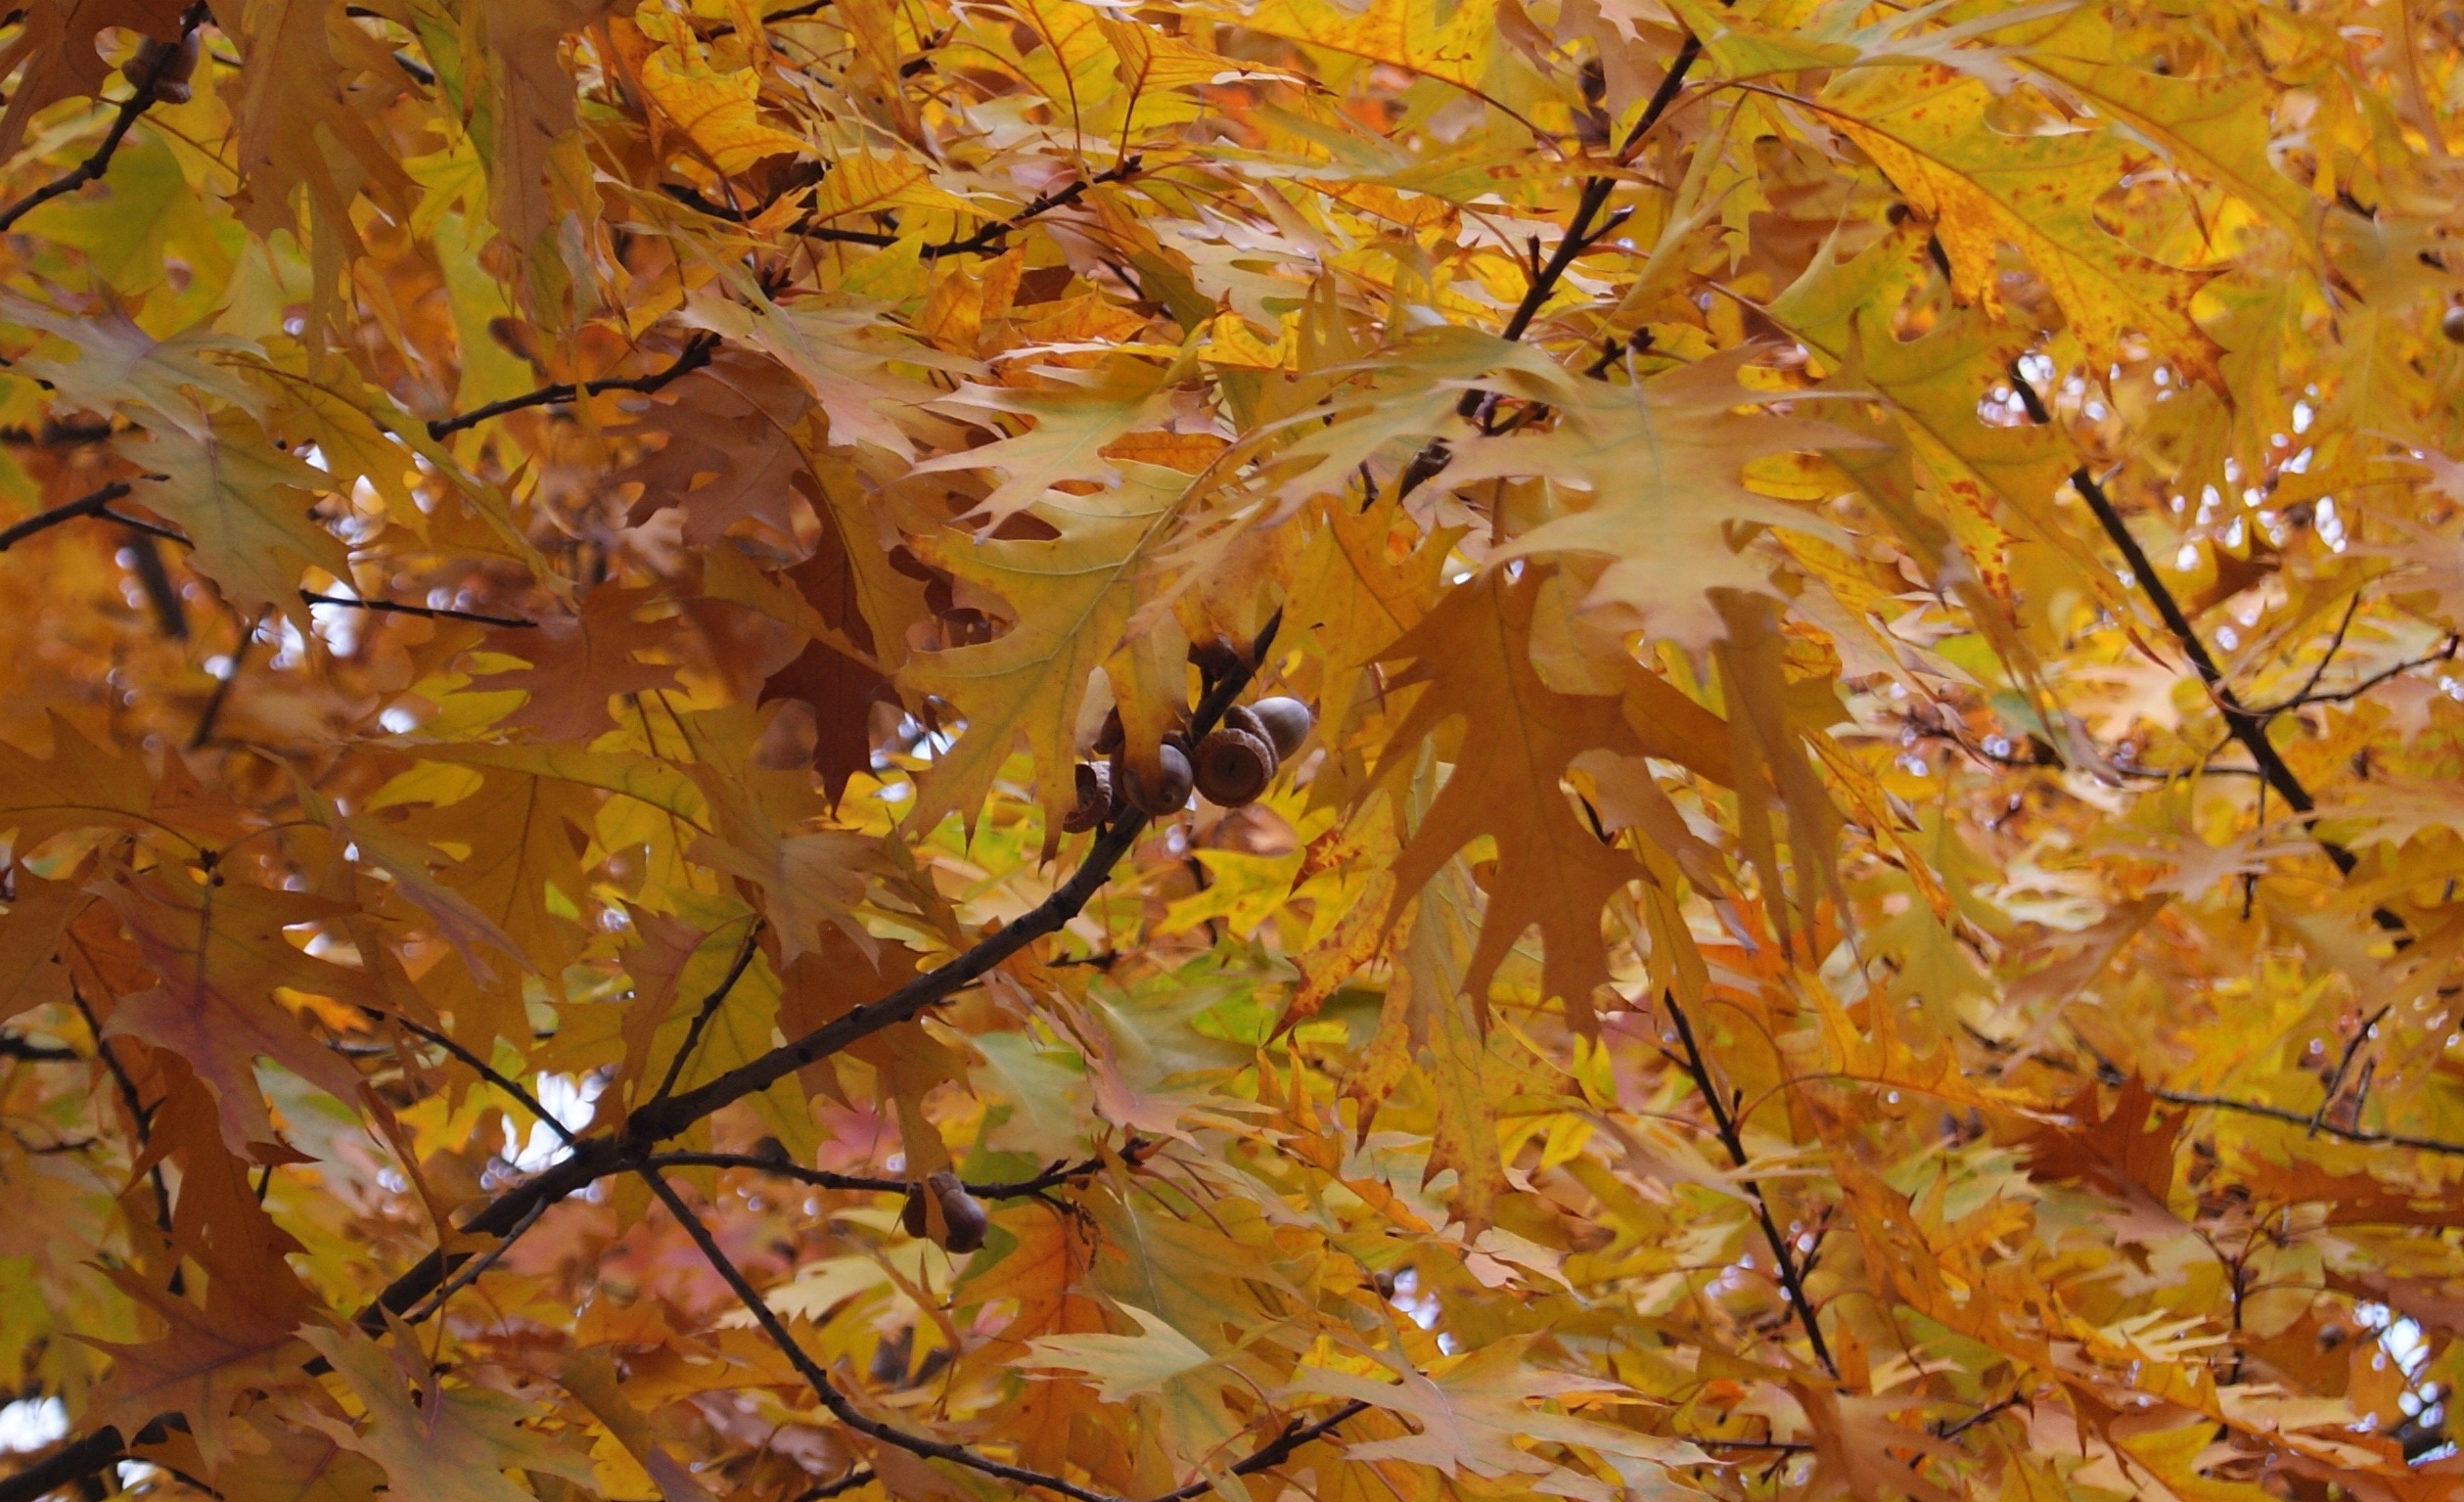 orange maple leaves